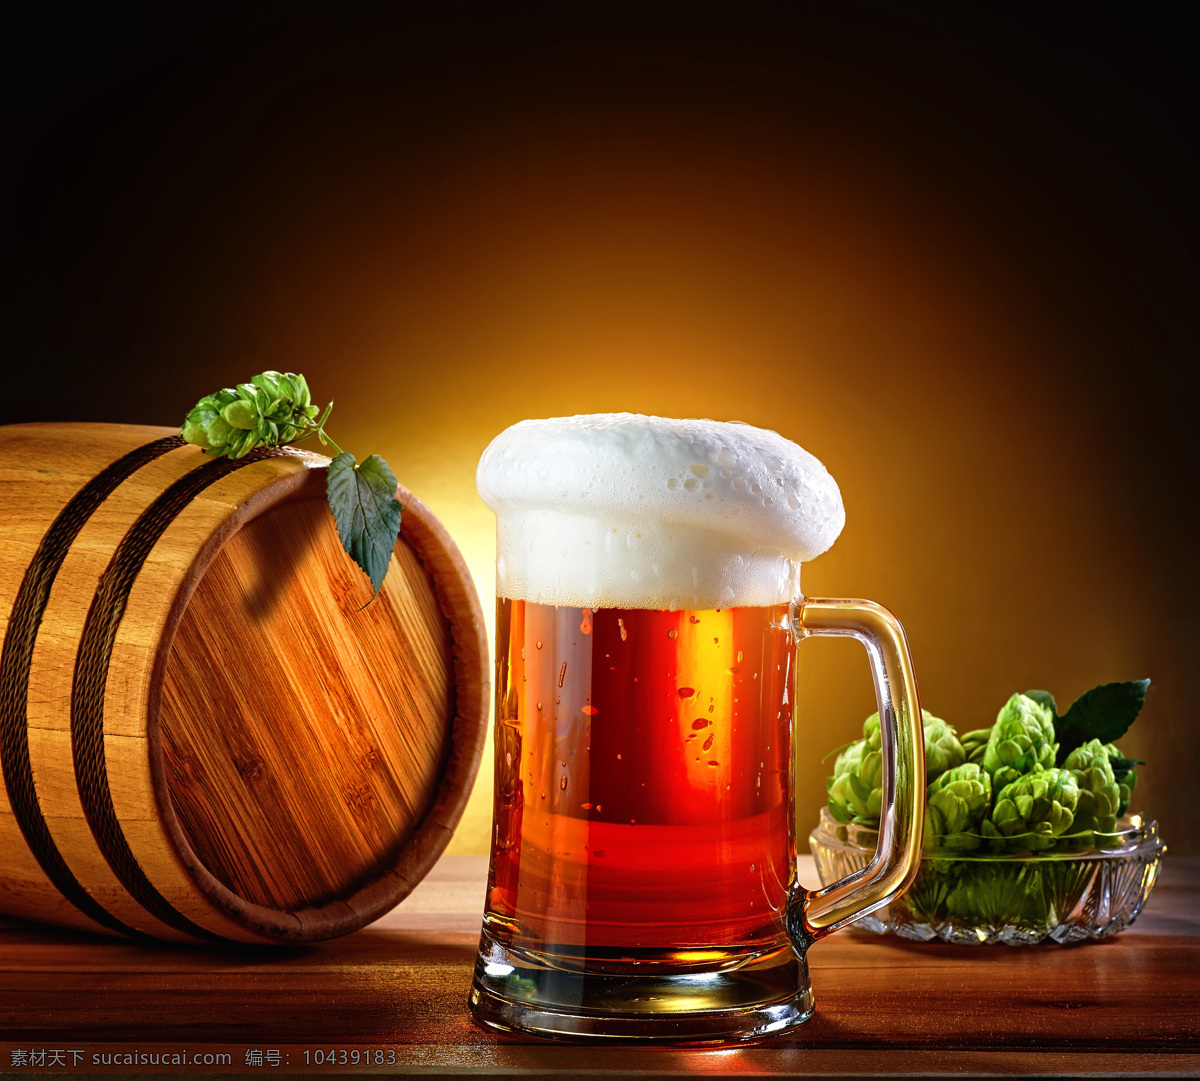 啤酒 啤酒花 玻璃酒杯 啤酒杯子 木桶 酒桶 酒类图片 餐饮美食